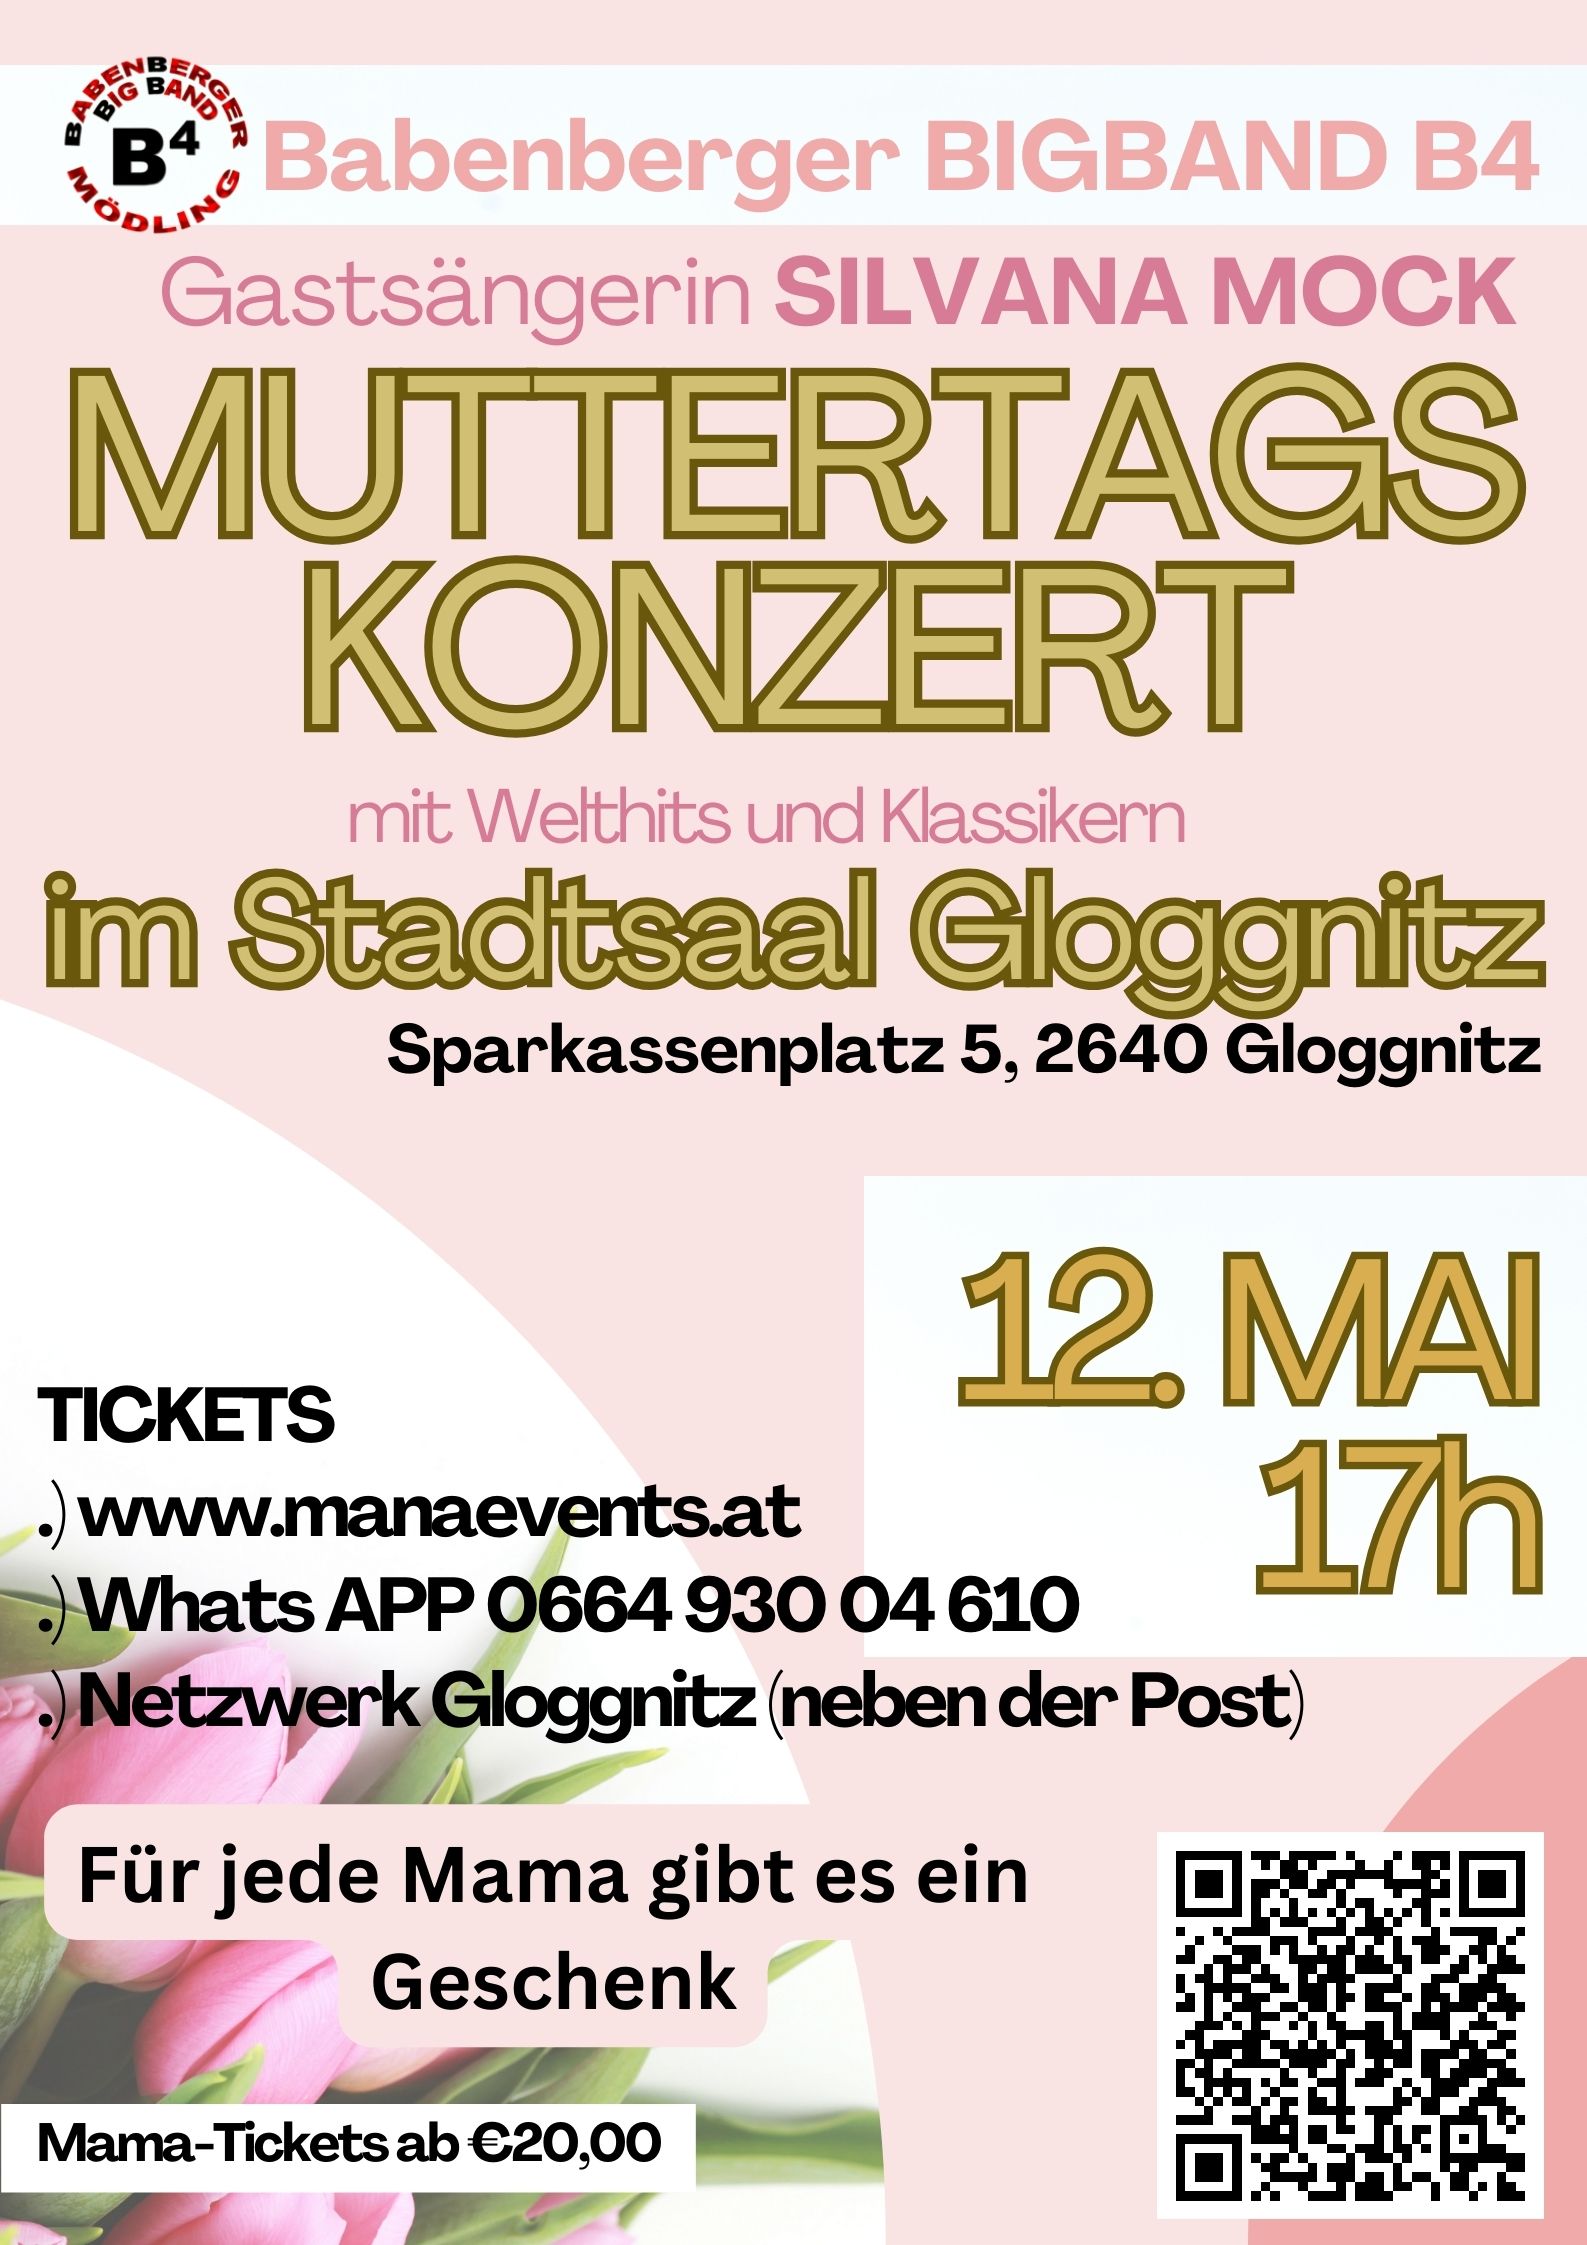 LEiDER ABGESAGT! Muttertagskonzert mit Welthits und Klassikern im Stadtsaal Gloggnitz